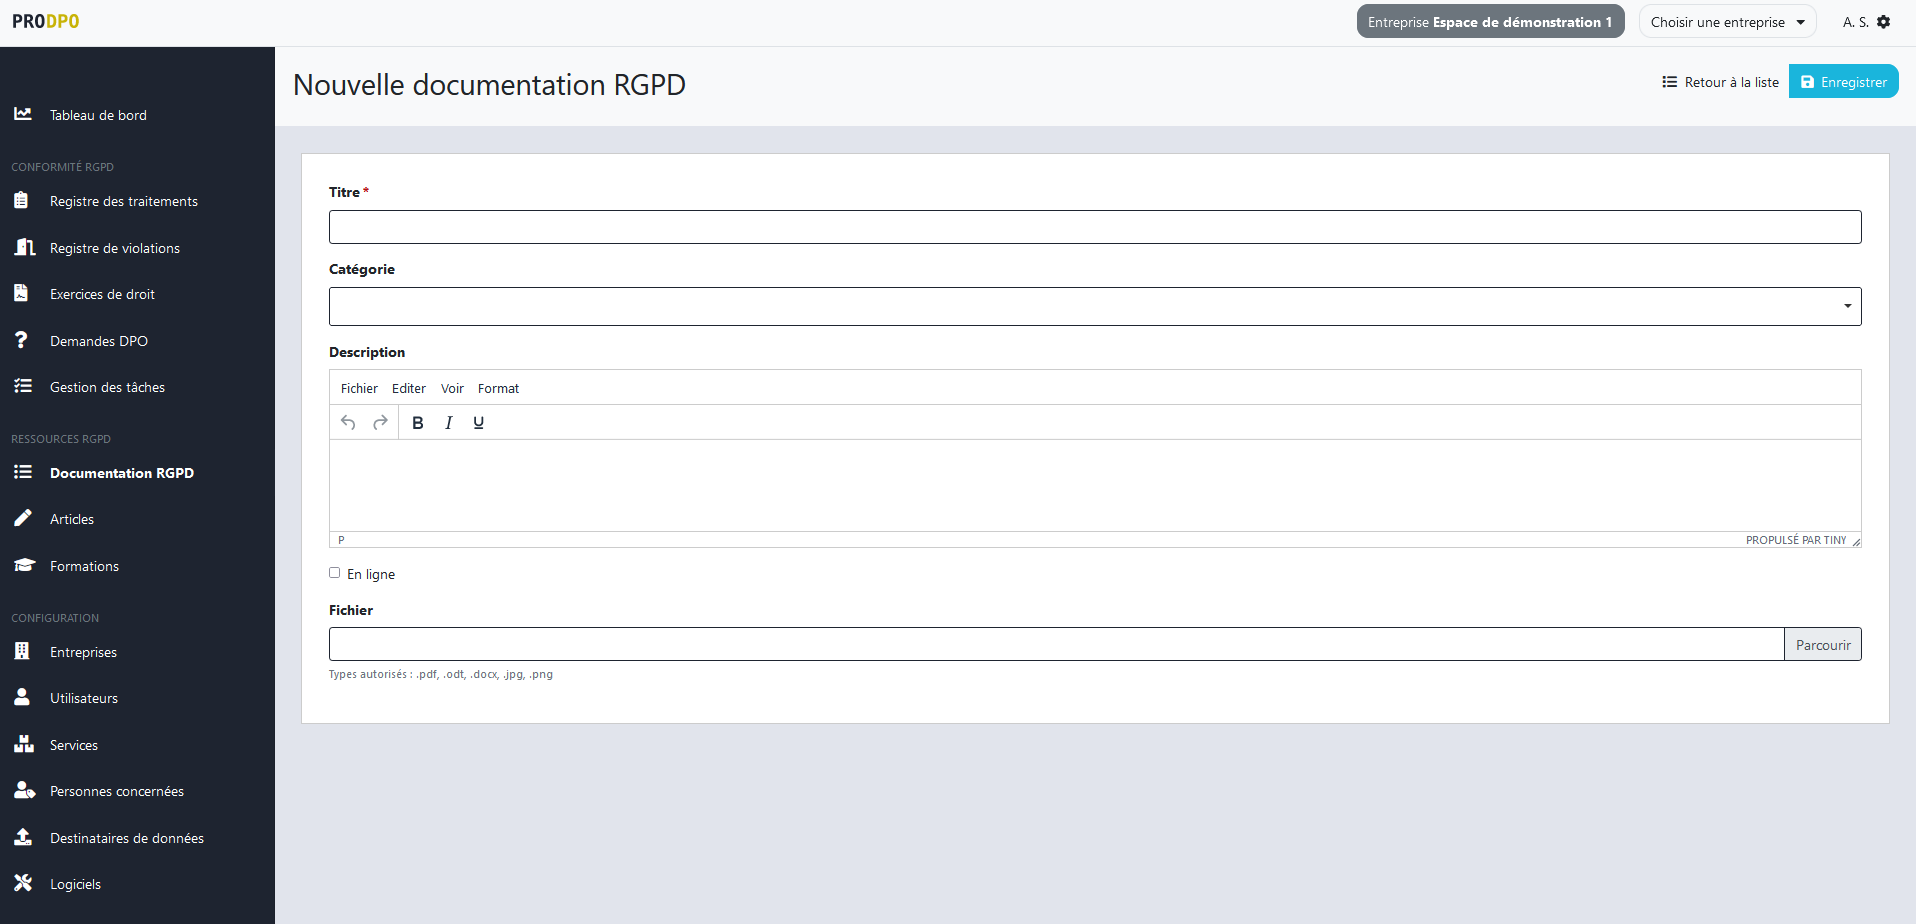 ProDPO - Documentation RGPD